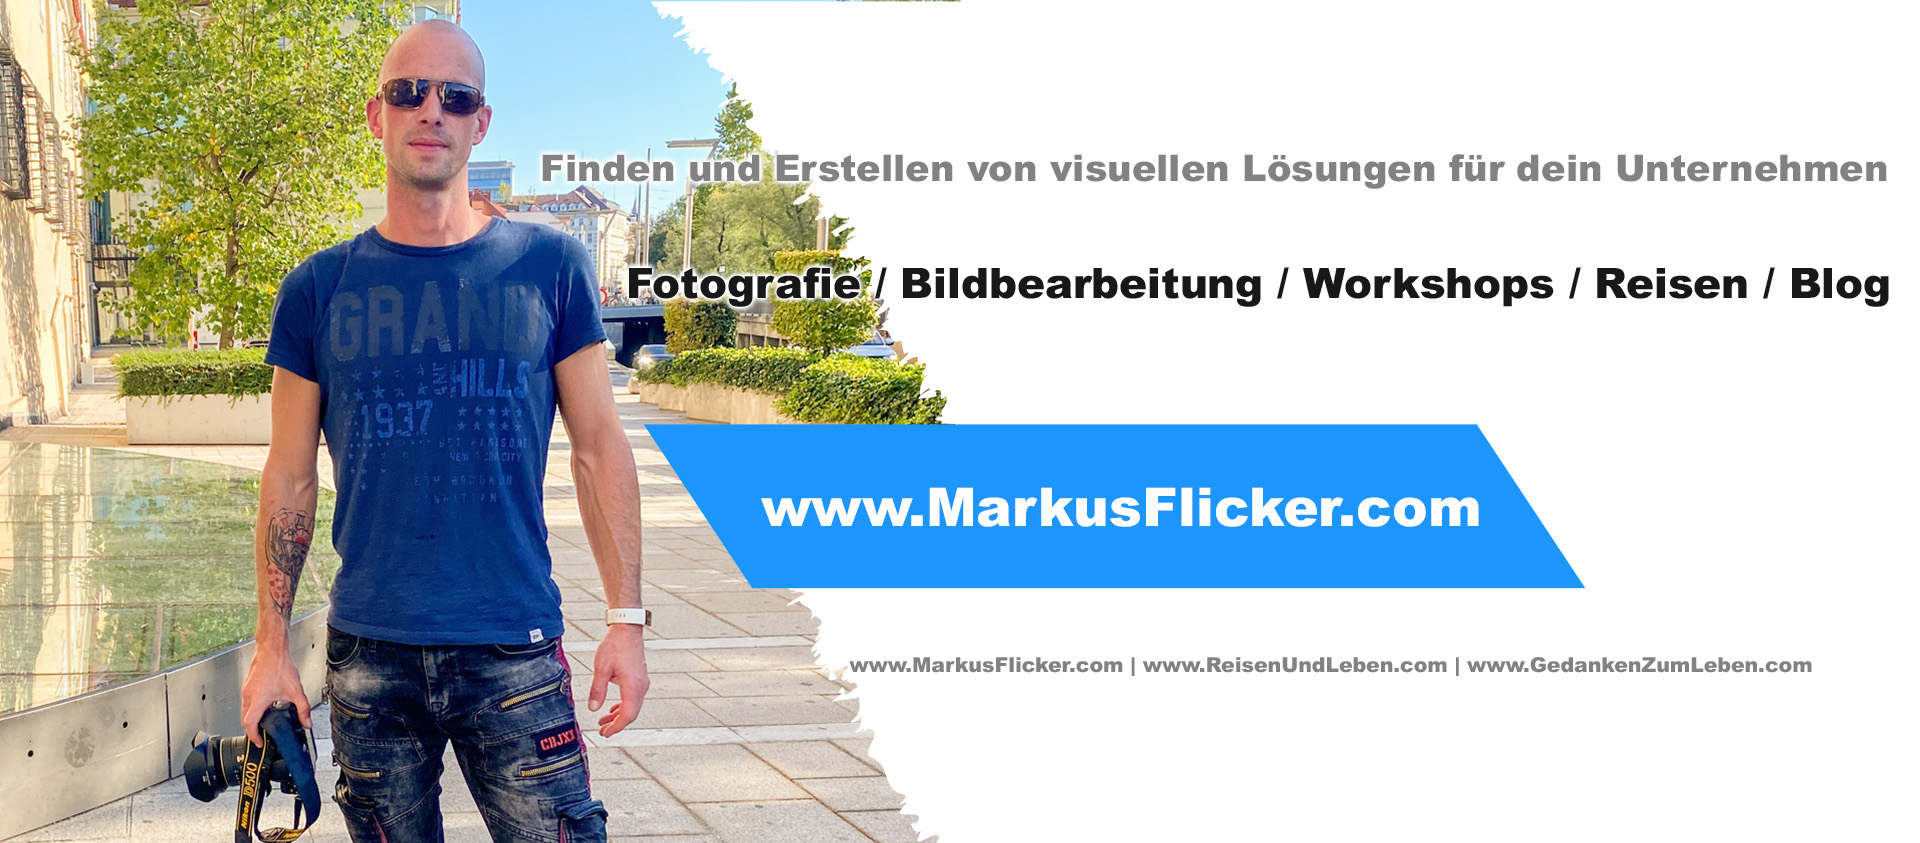 Markus Flicker Fotografie // Bildbearbeitung // Workshops // Reisen // Blog